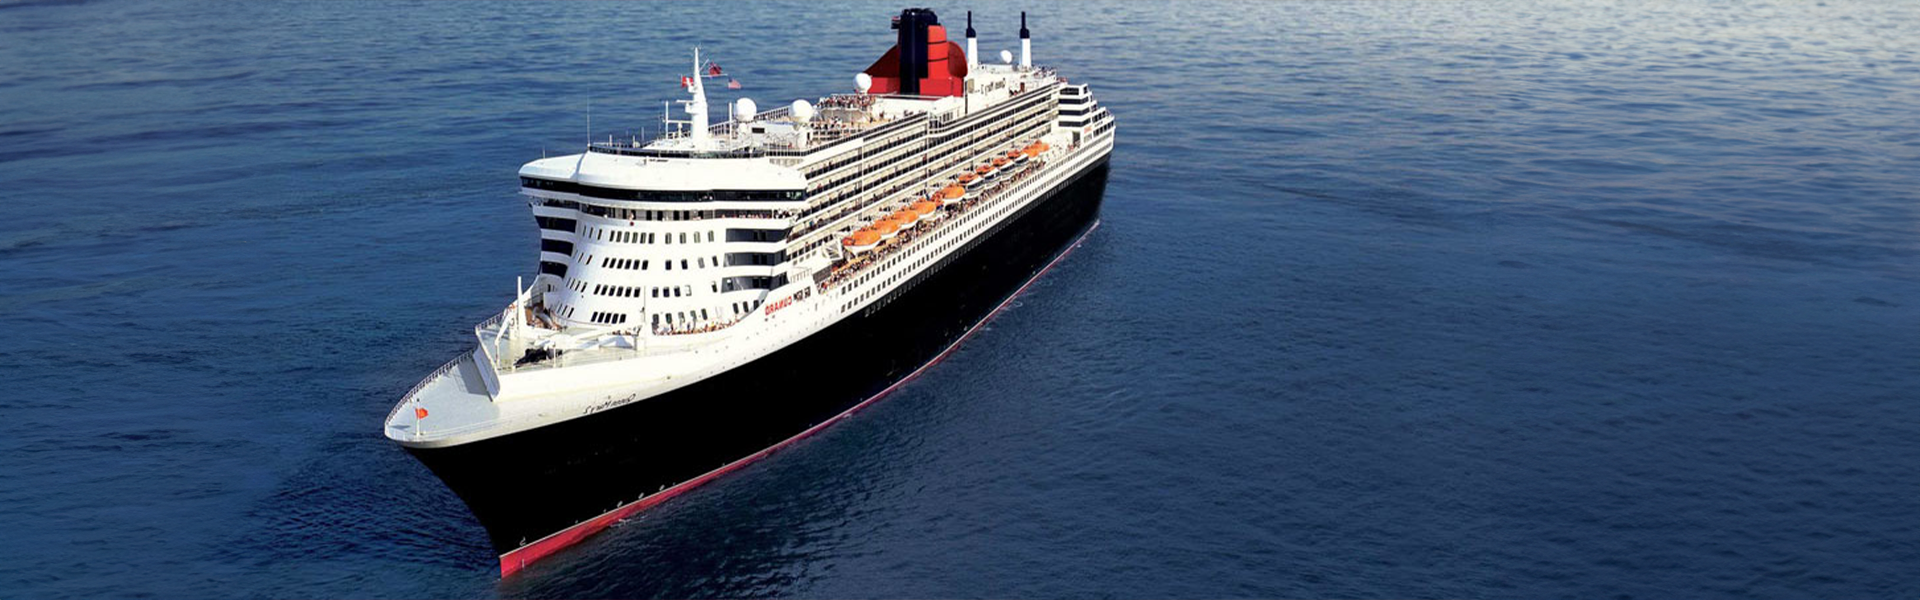 Престиж и качество на борту с Cunard